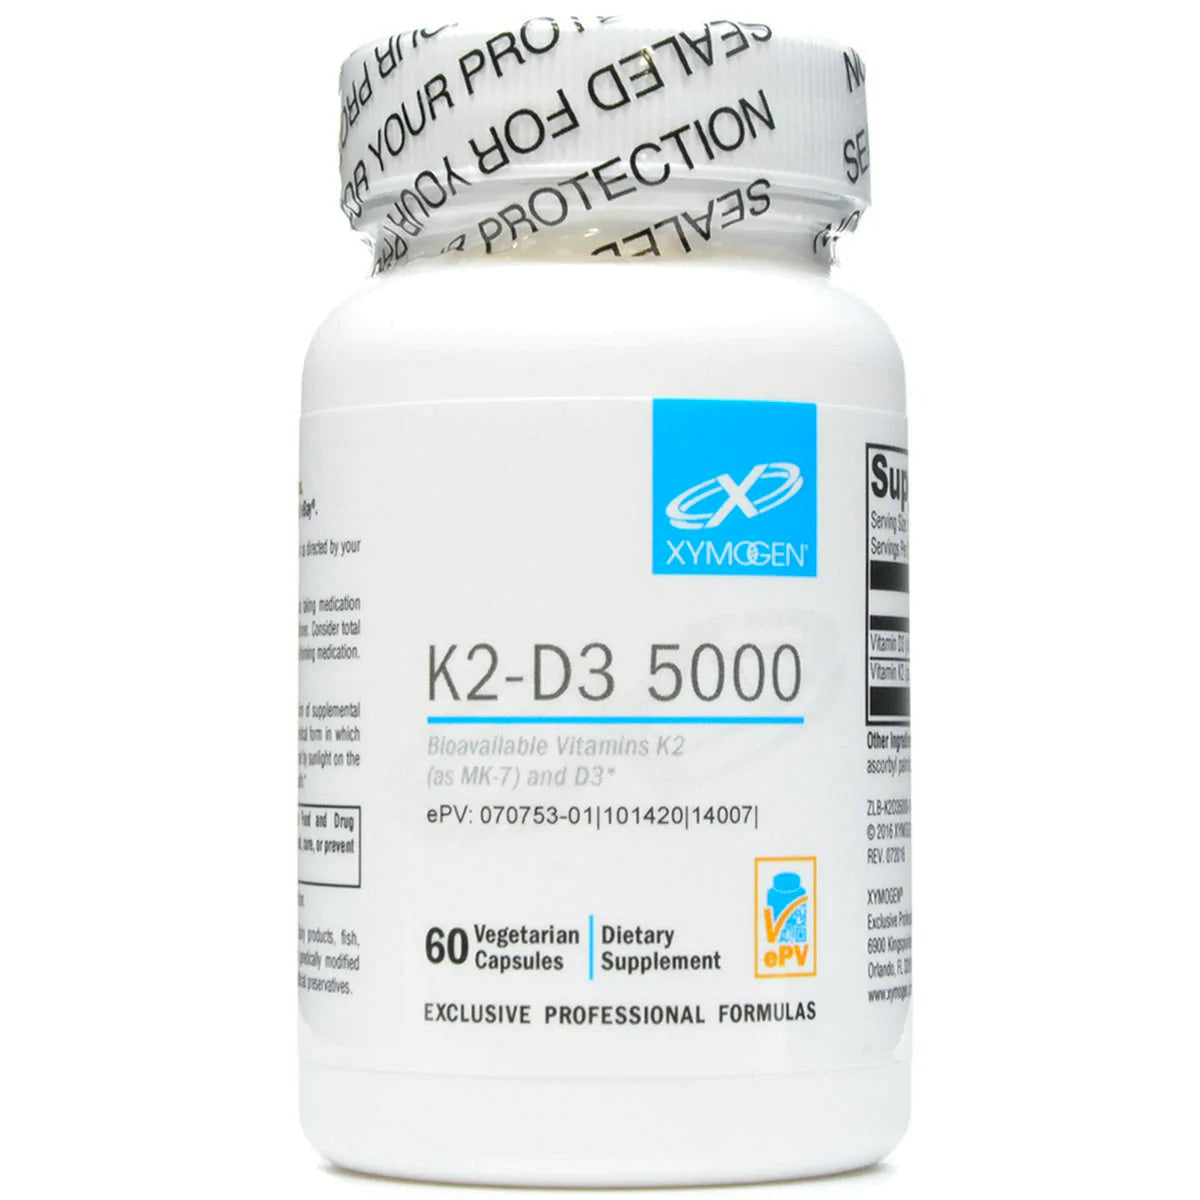 Xymogen K2-D3 5000 - ePothex